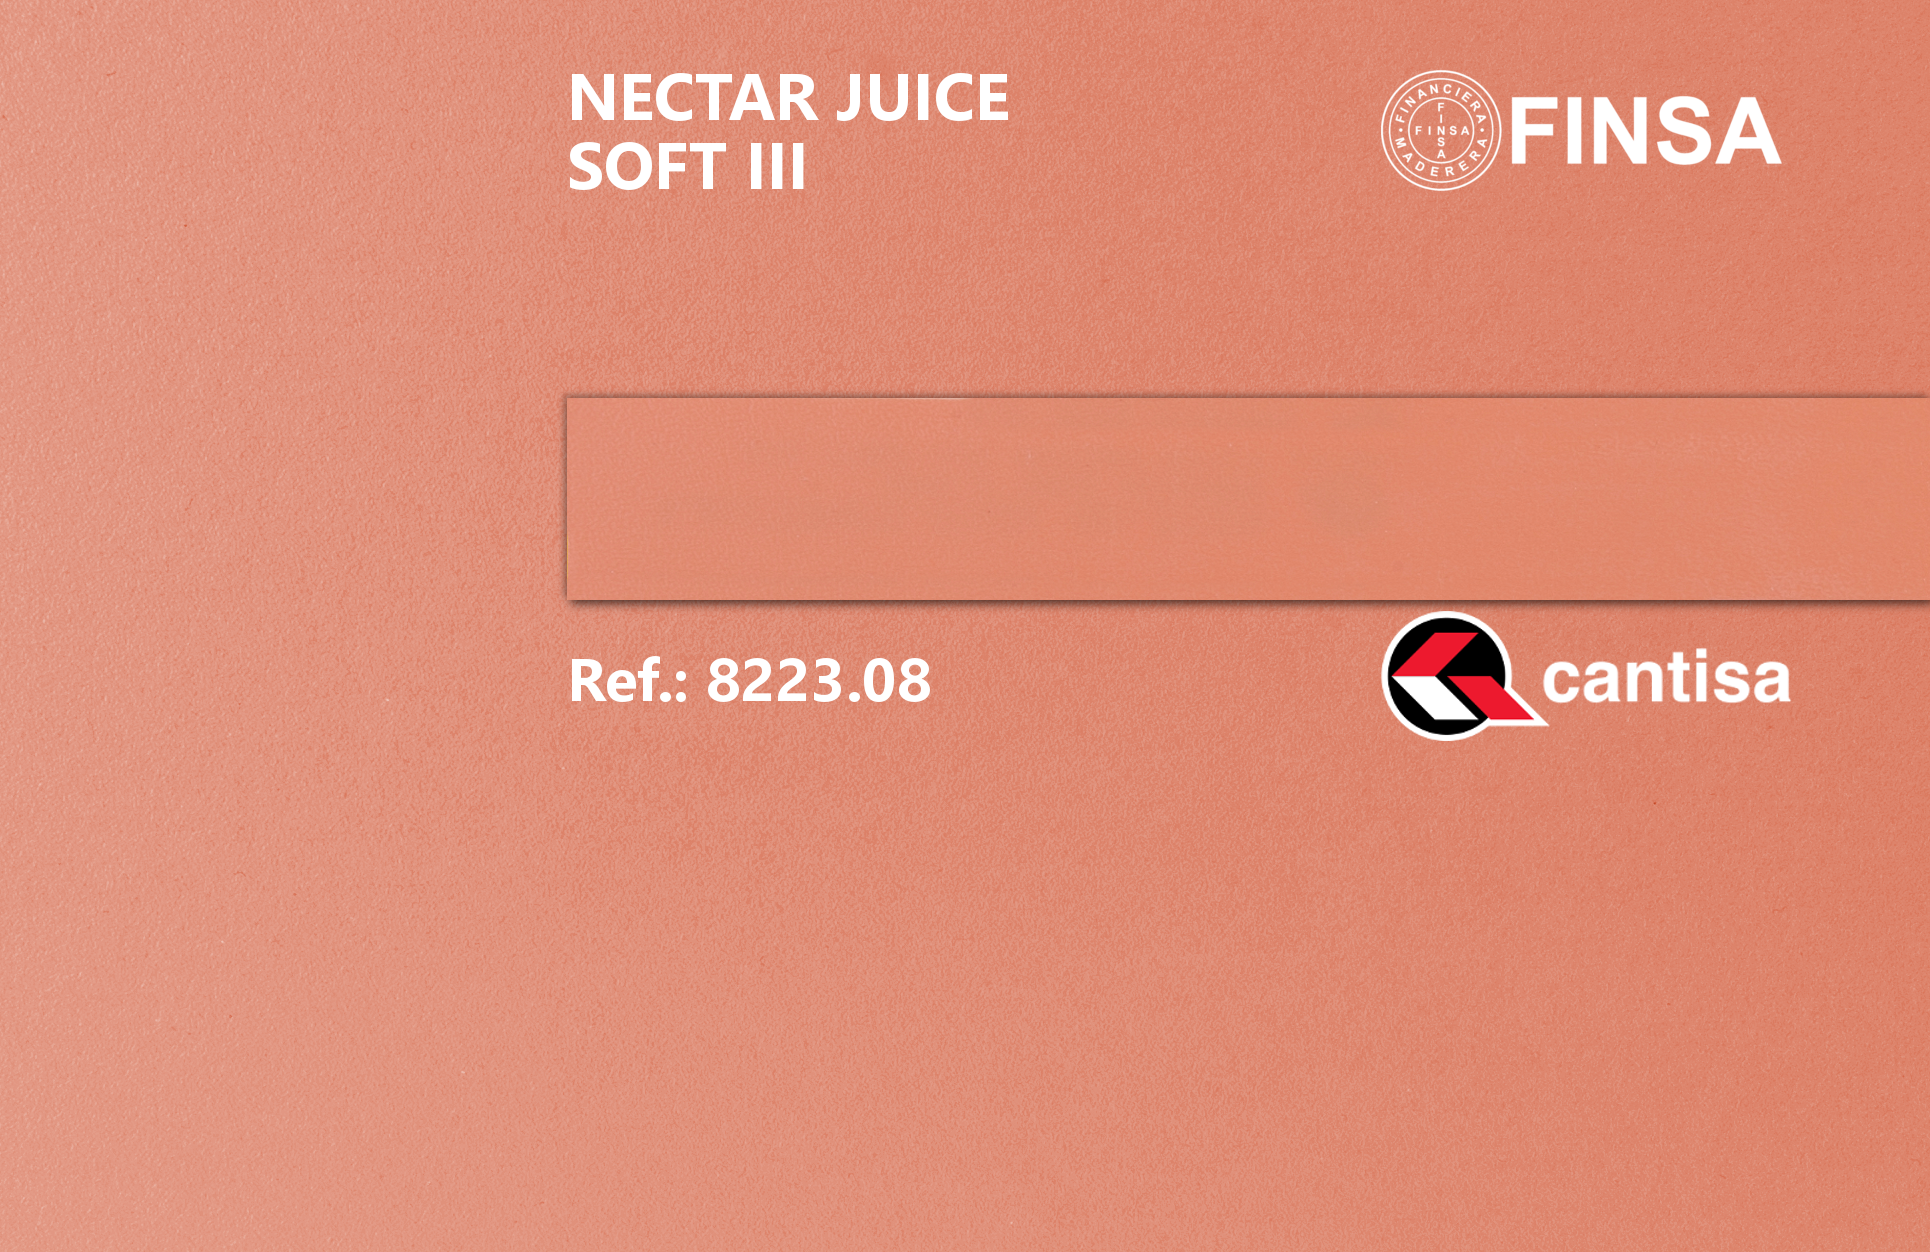 Finsa - Nectar Juice